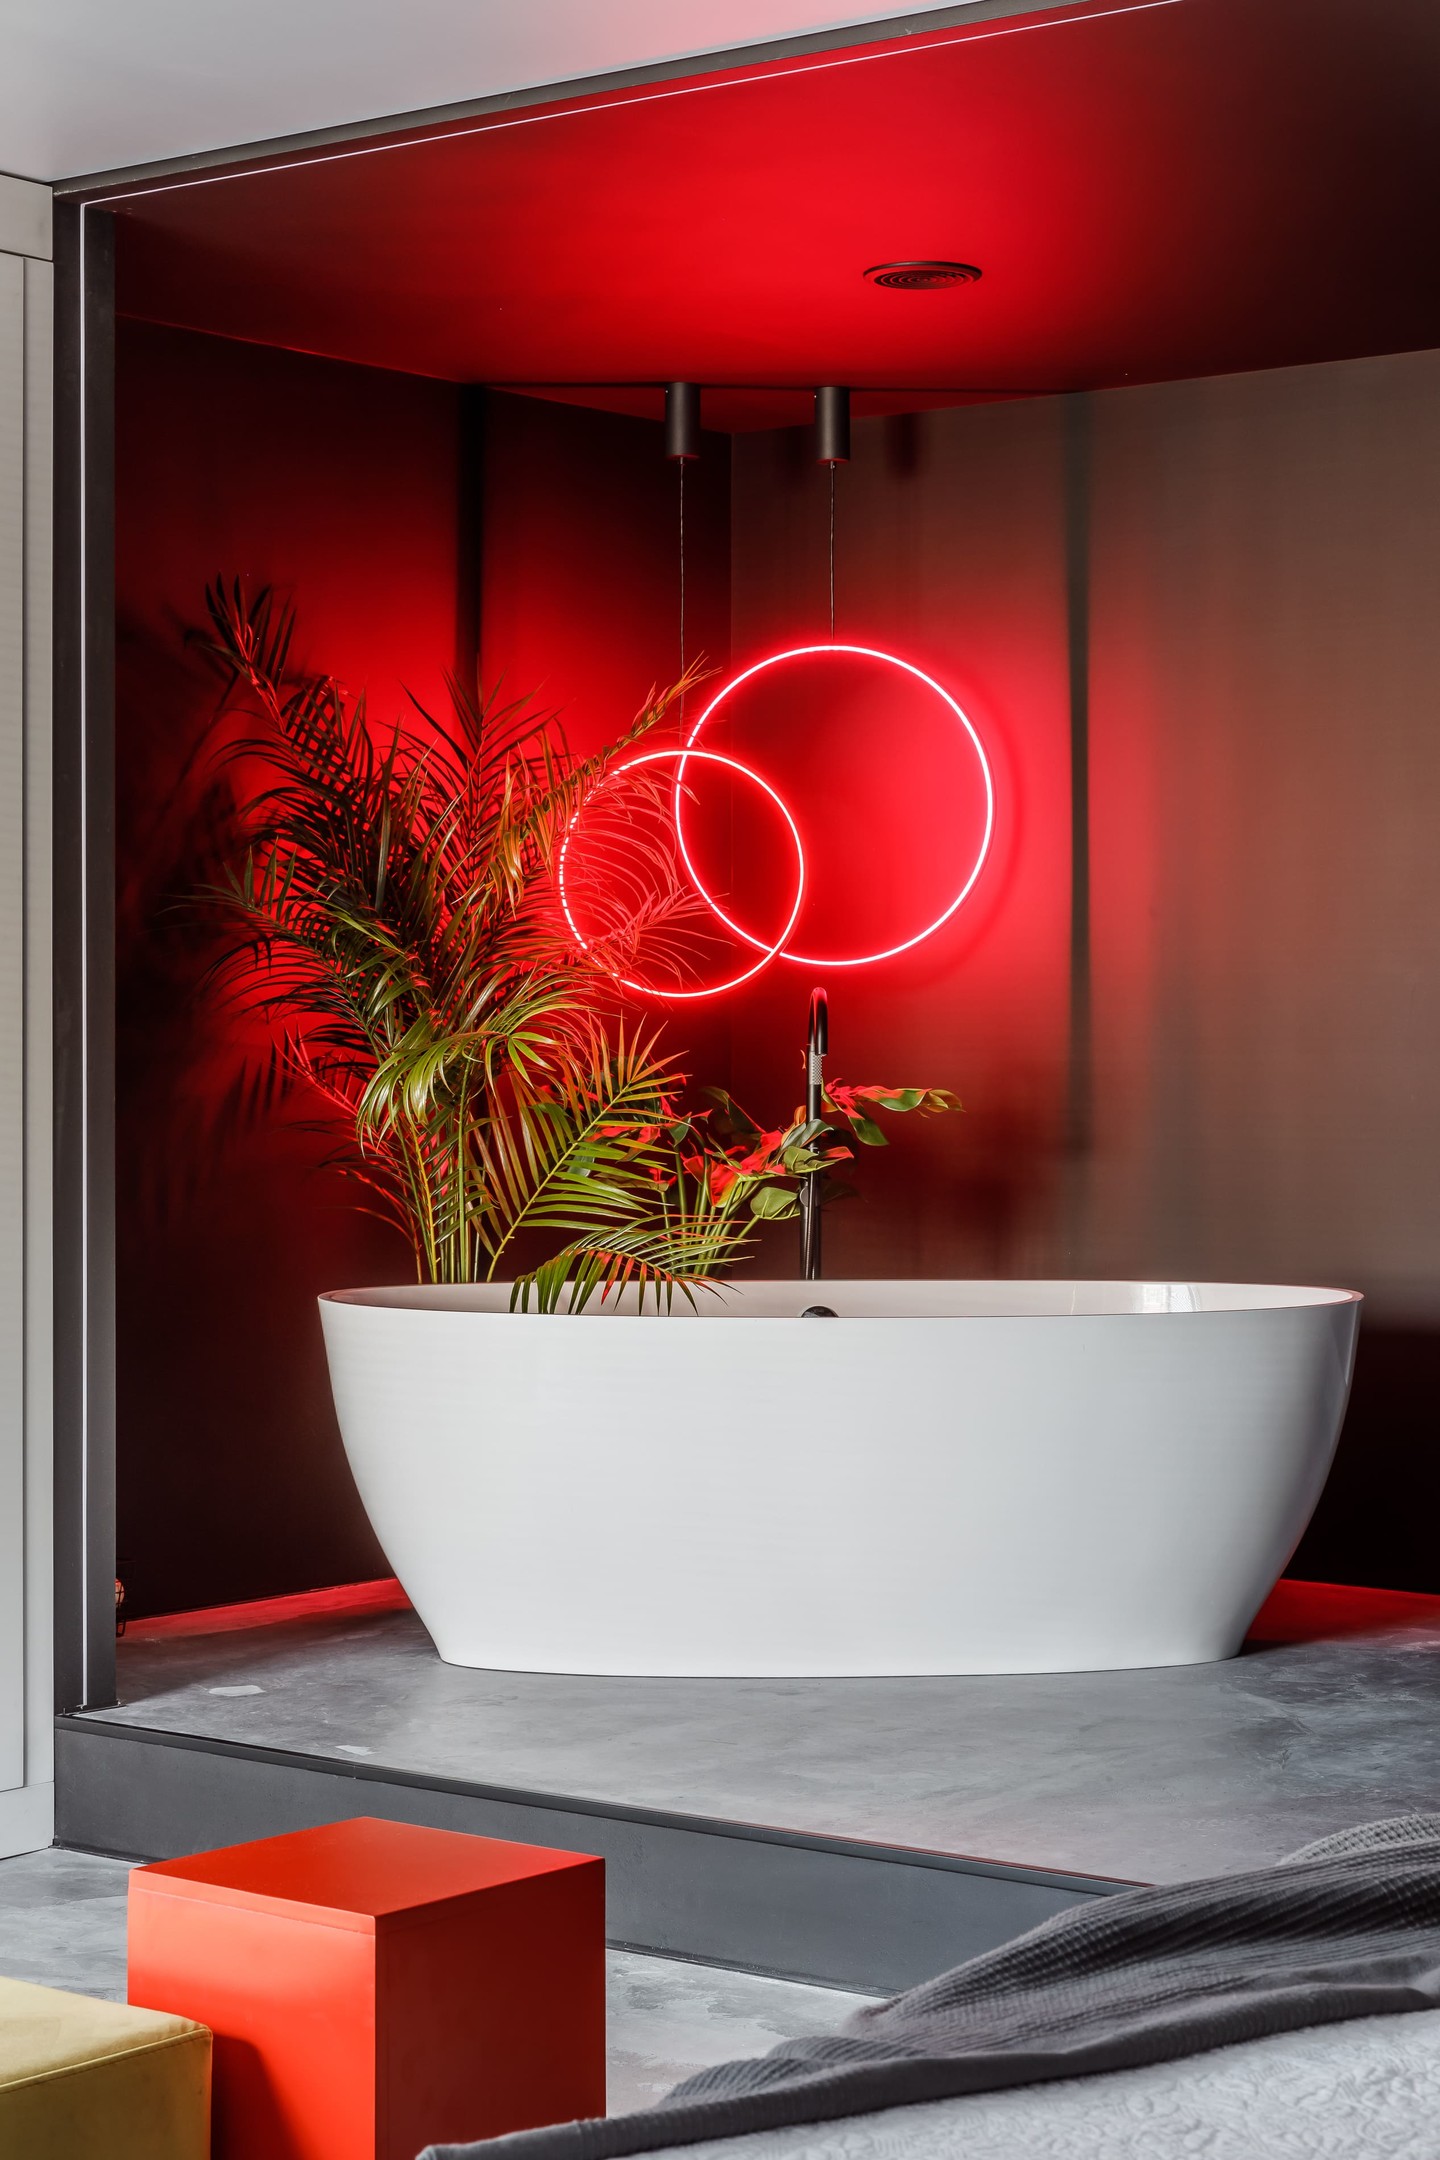 Một phòng tắm tone màu xám - đen - trắng bí ẩn cùng ánh đèn LED đỏ hình tròn trên nền tường tạo nên một vẻ quyến rũ cực kỳ 'sexy'. Chỉ cần một bậc tam cấp là chủ nhân đã có thể di chuyển từ phòng ngủ đến bồn tắm nằm thư giãn.